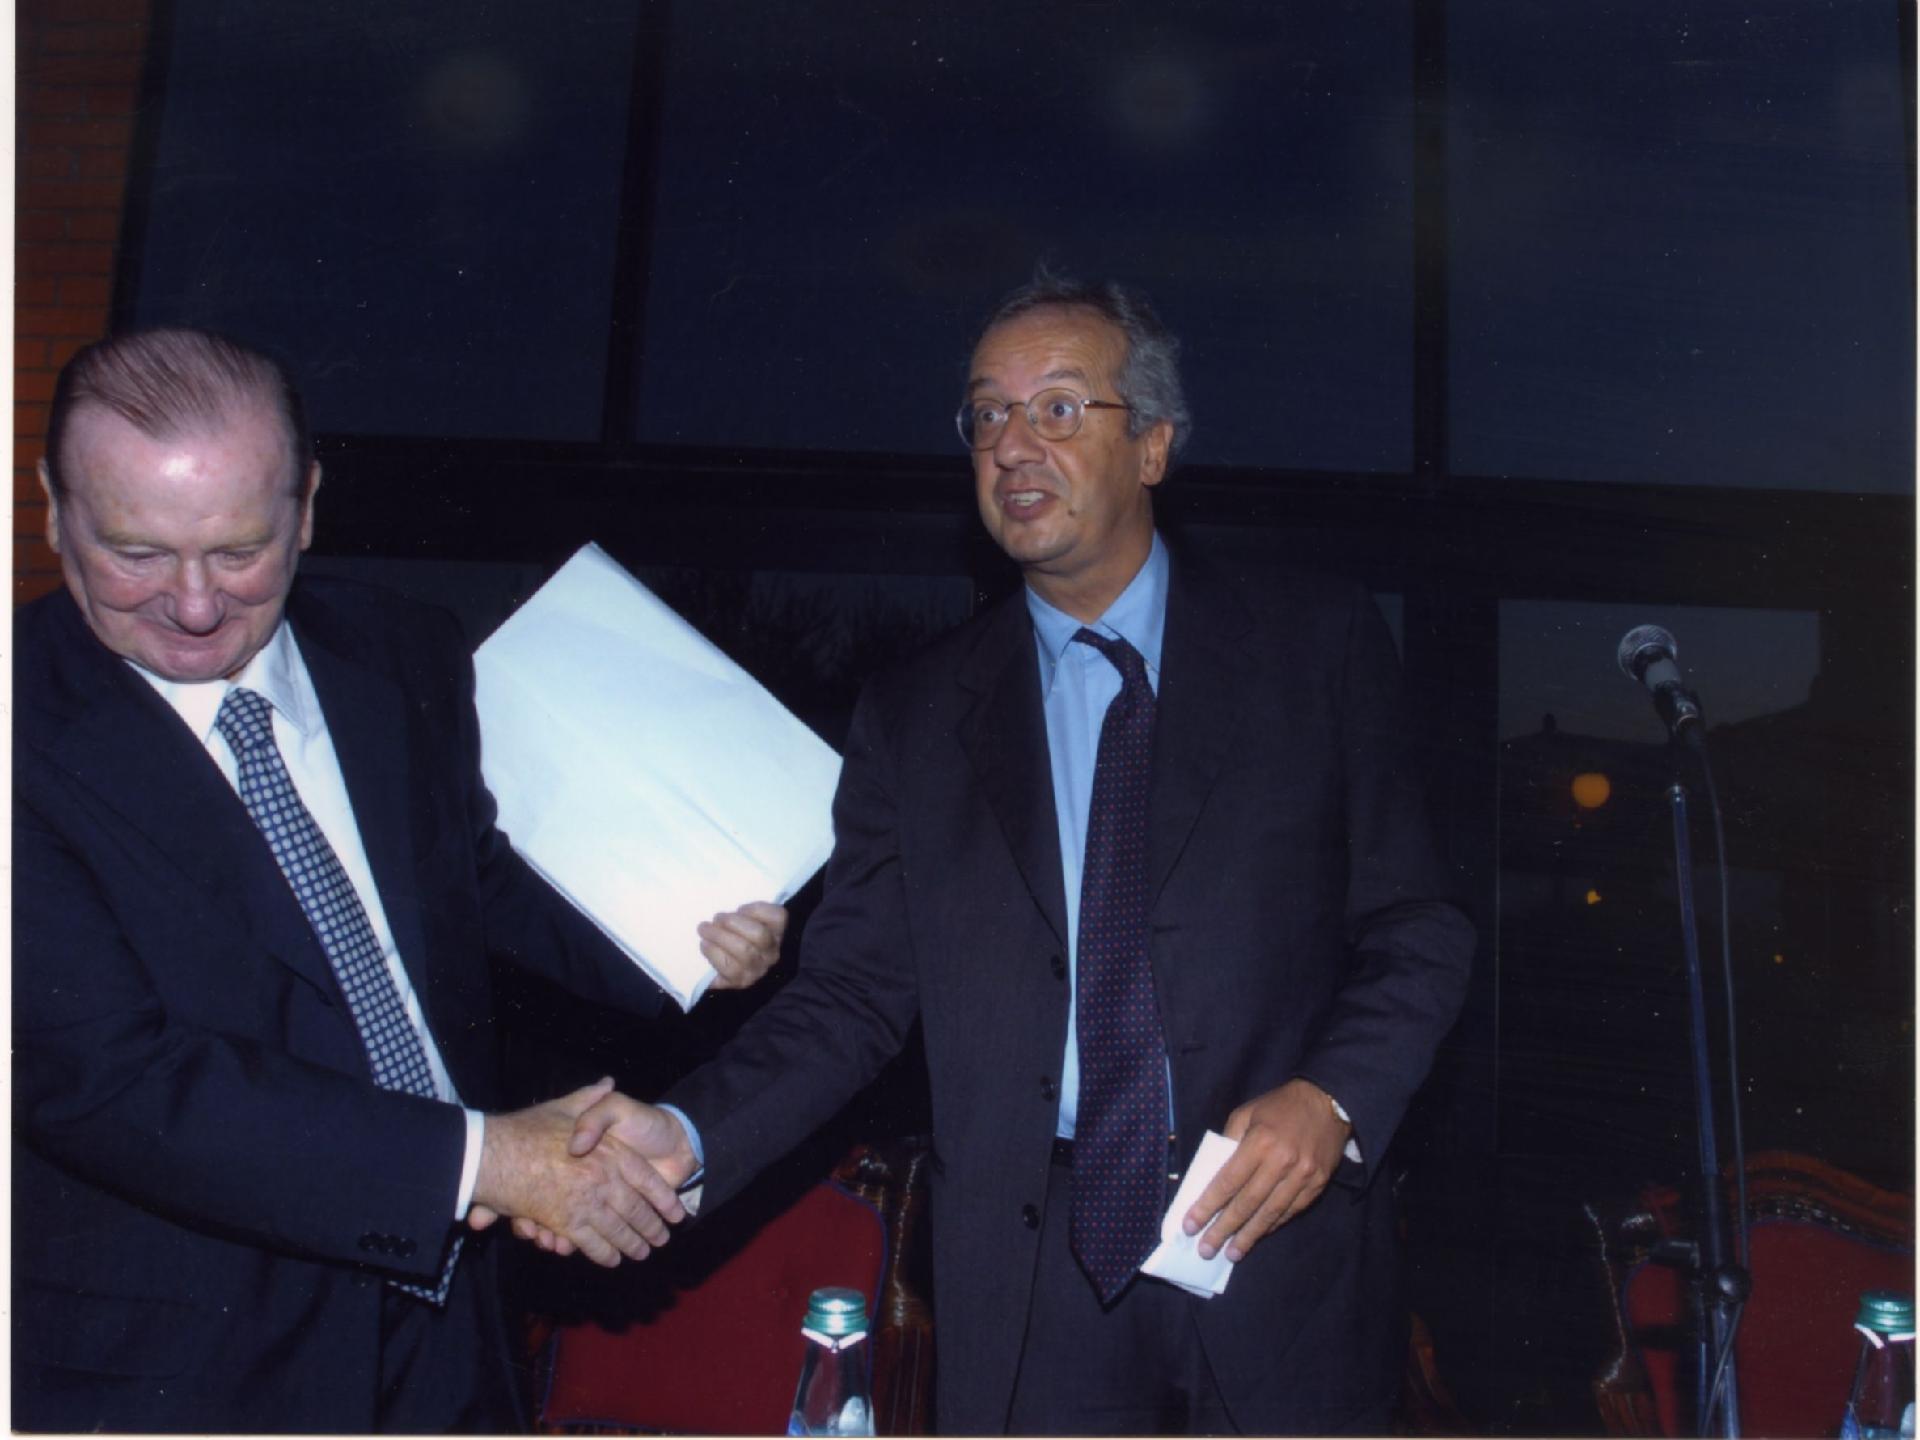 Gianni Bisiach con Walter Veltroni alla presentazione del libro di Walter Veltroni su Robert Kennedy nel 1993